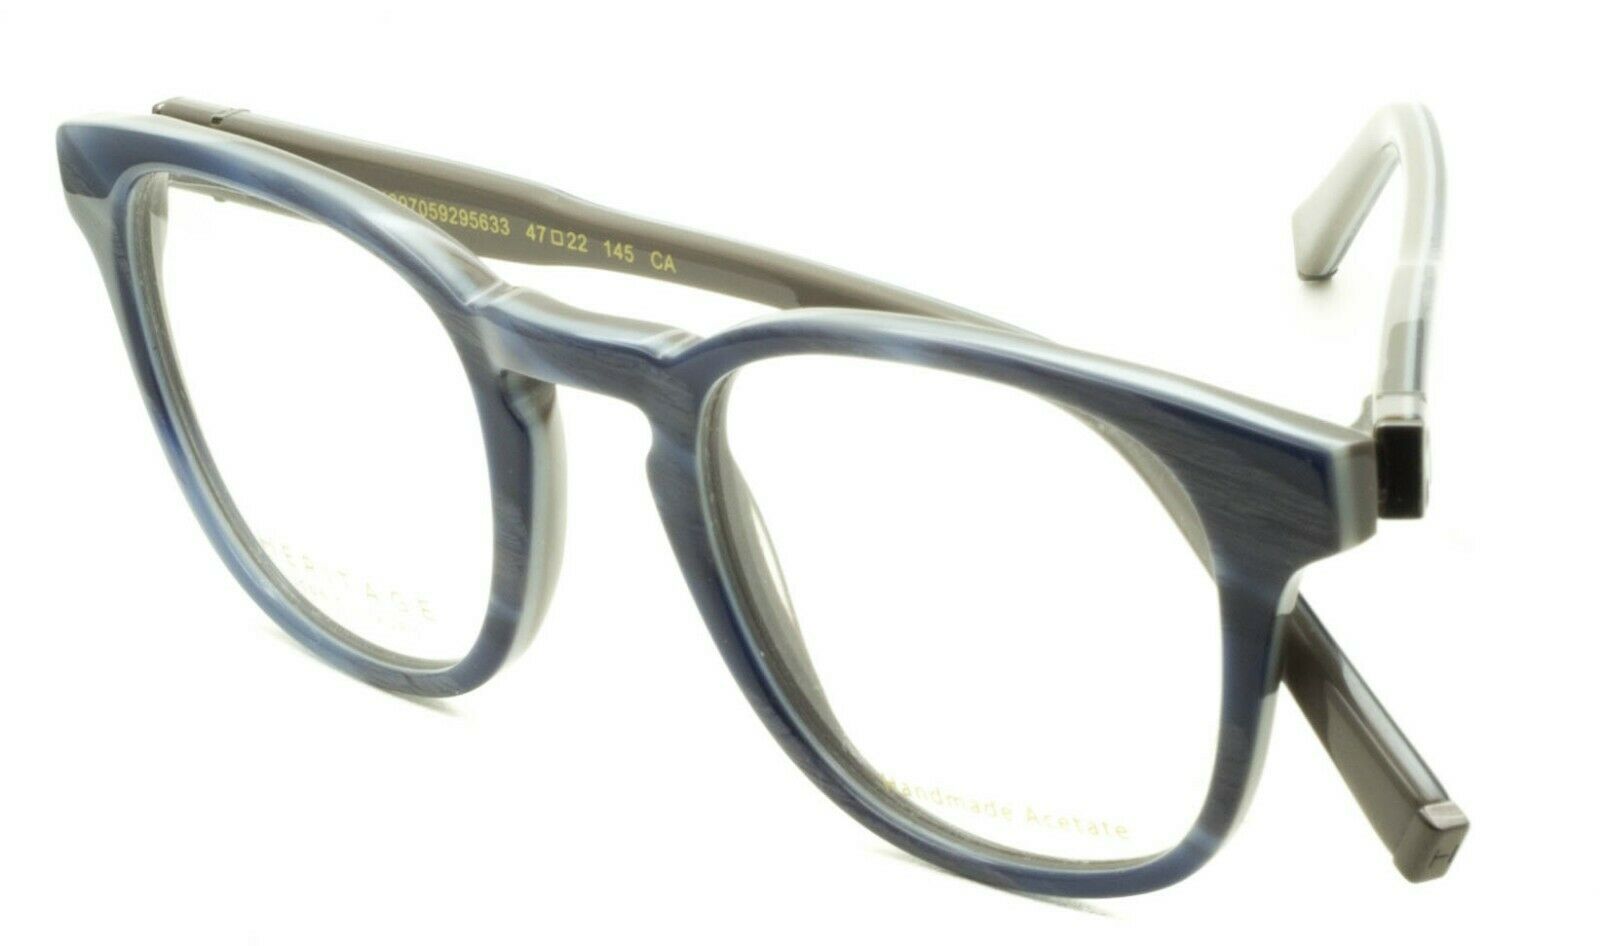 HERITAGE Iconic Luxury HEBM28 LG Eyewear FRAMES Eyeglasses RX Optical Glasses